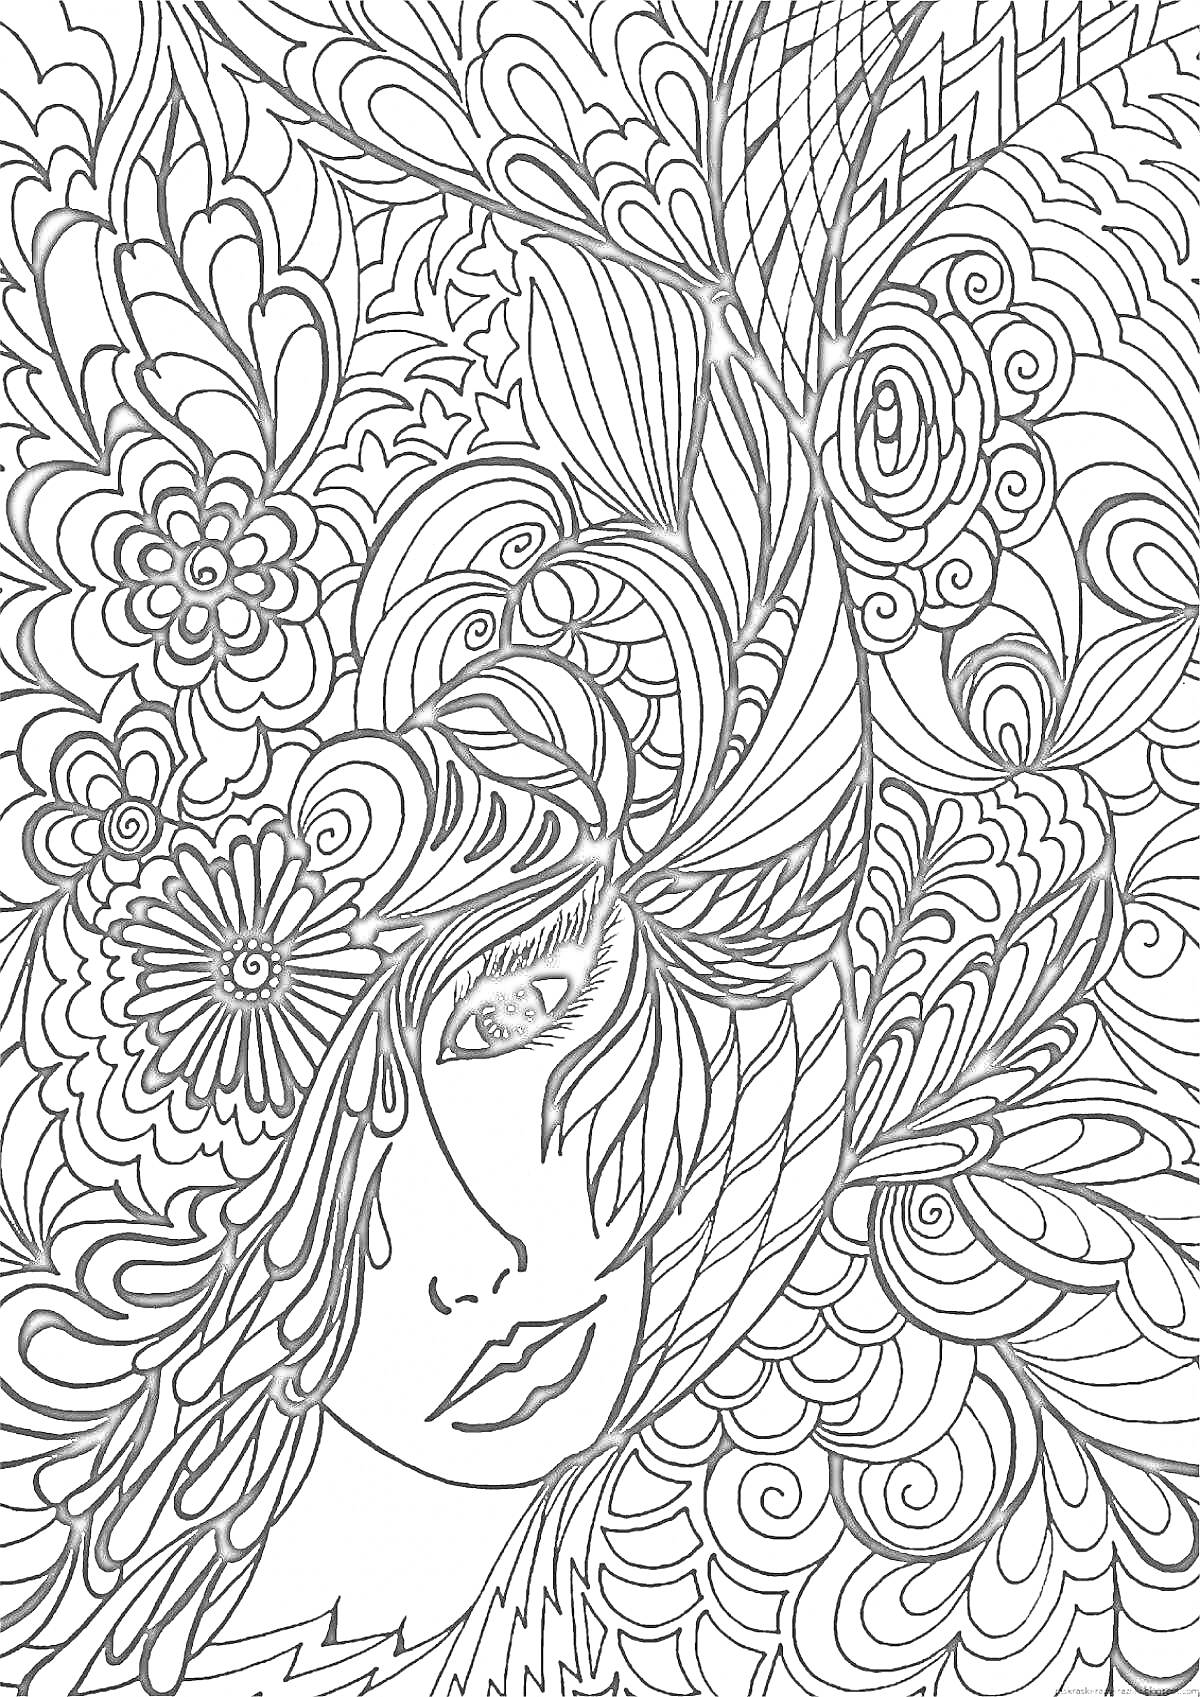 Раскраска Портрет девушки с цветами и волнистыми узорами